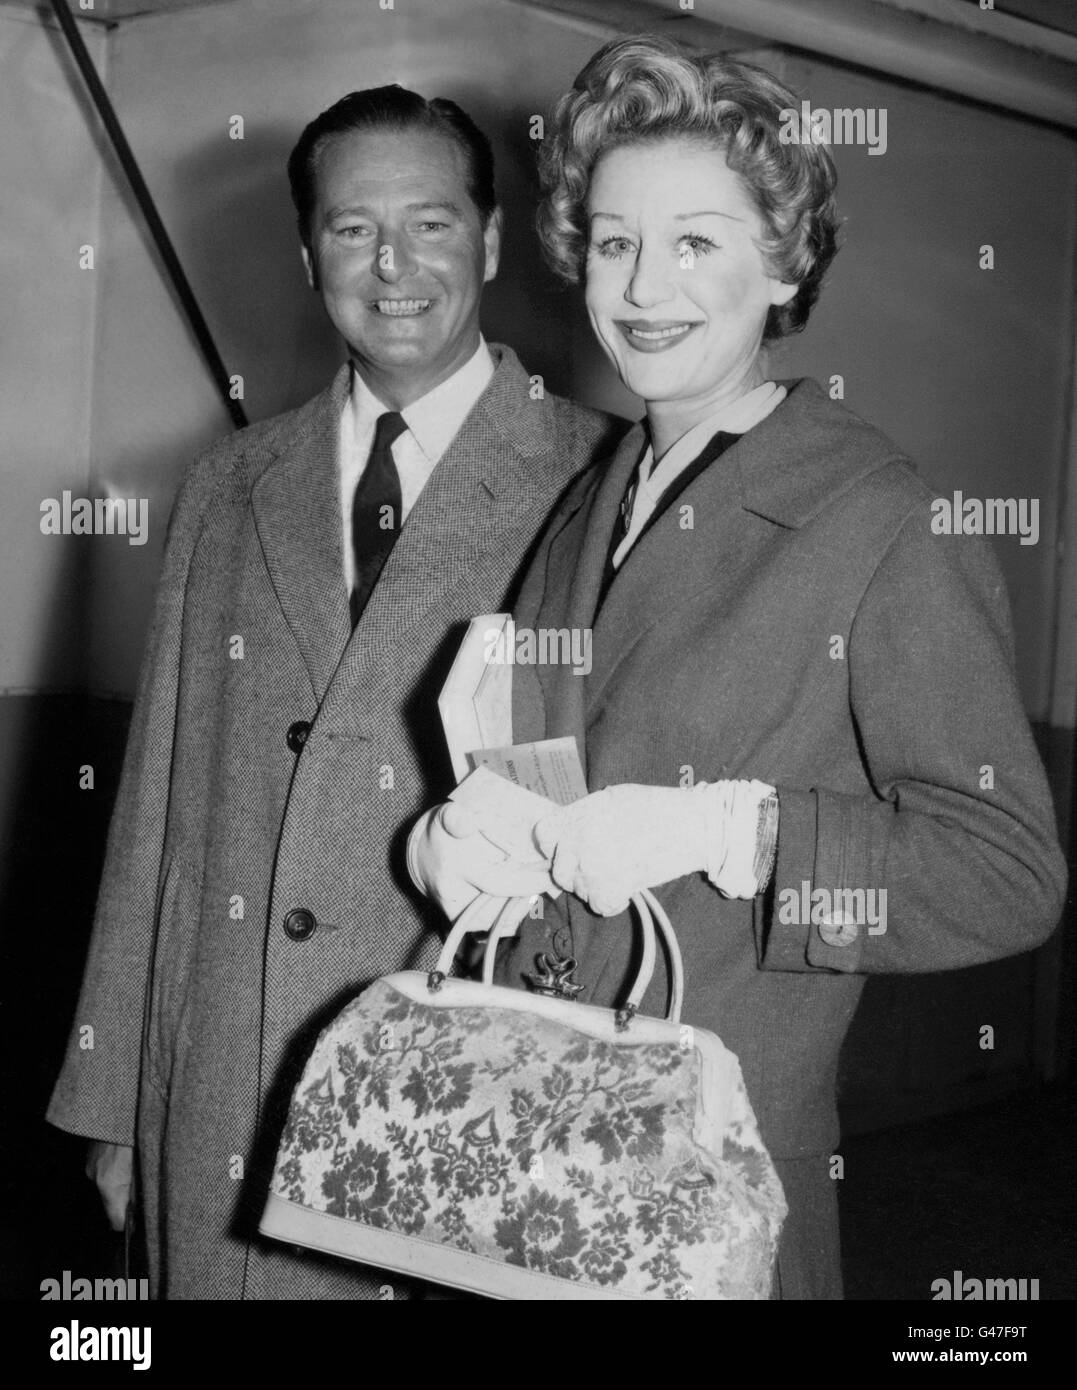 La dramaturge anglaise à succès Terence Rattigan (l) avec l'actrice Margaret Leighton (r) à Southampton à bord du Cunard Liner Queen Elizabeth à l'arrivée de New York. Banque D'Images